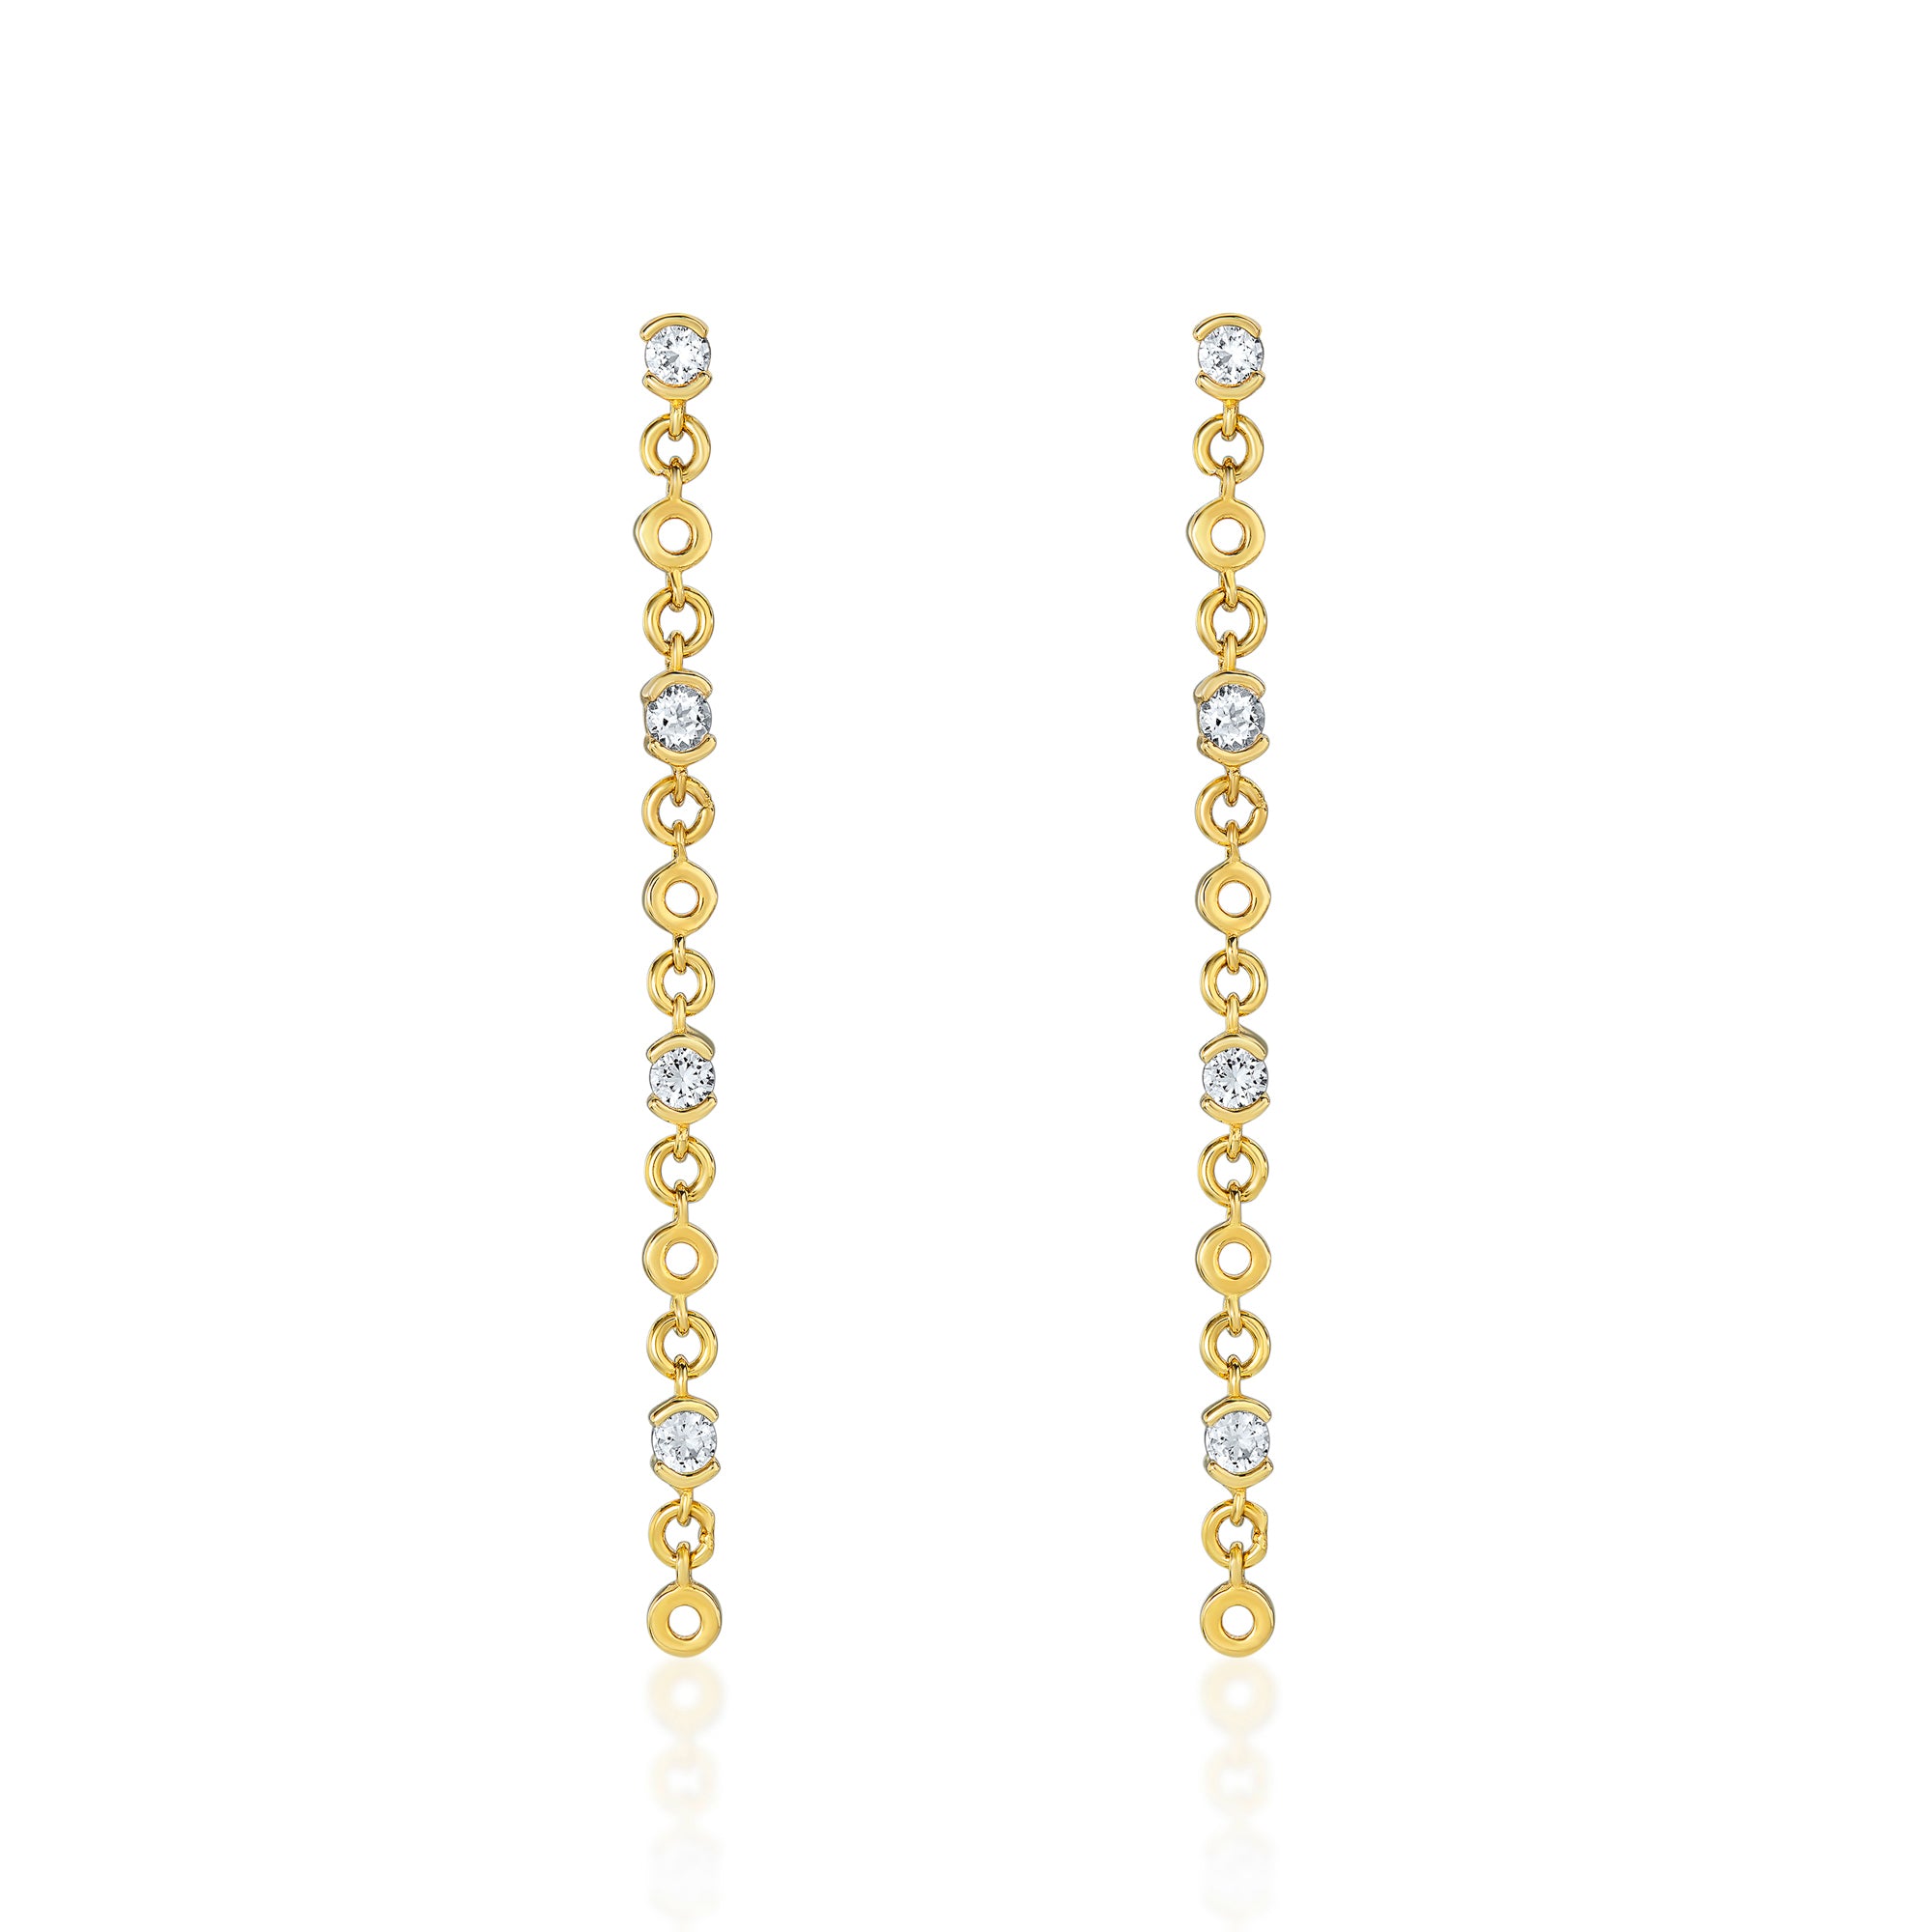 Lyla Gold Drop Earrings with White Topaz